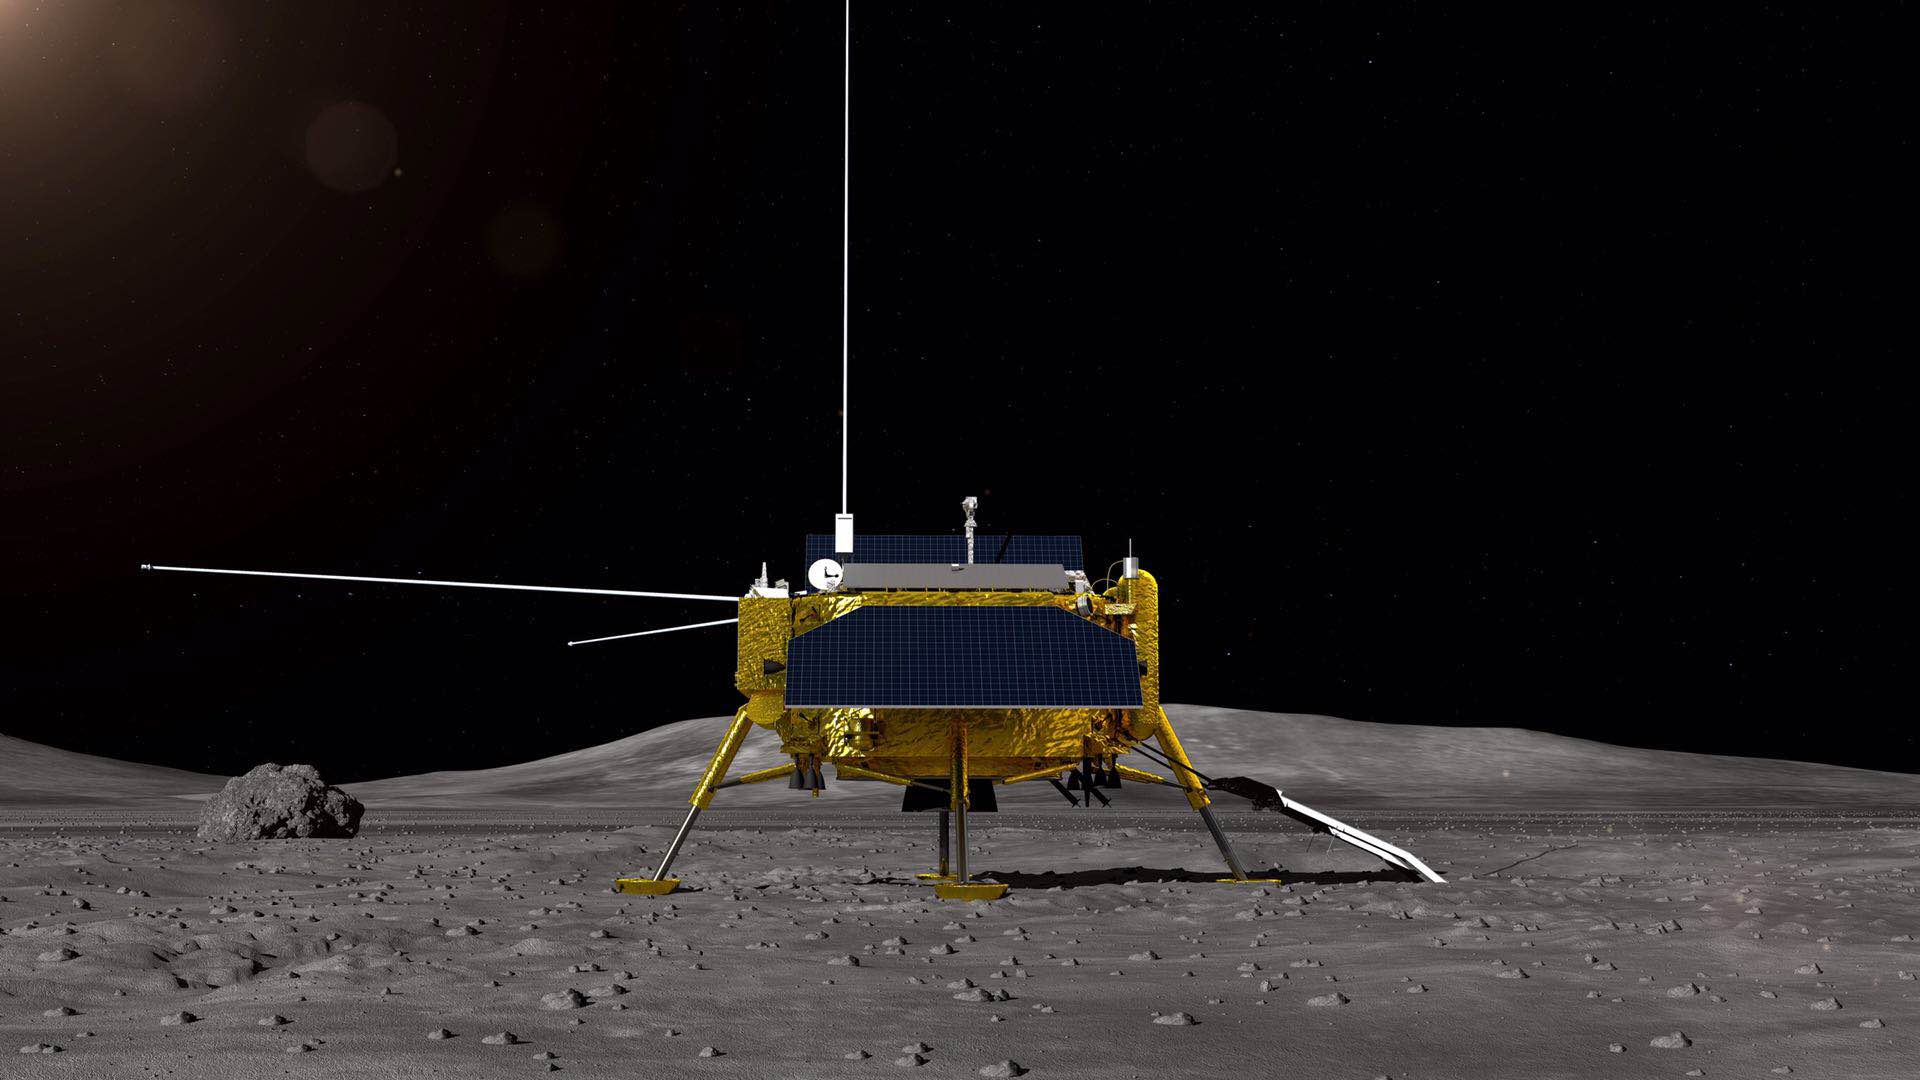 嫦娥四号任务月球车全球征名启动!快来发挥你的才华吧